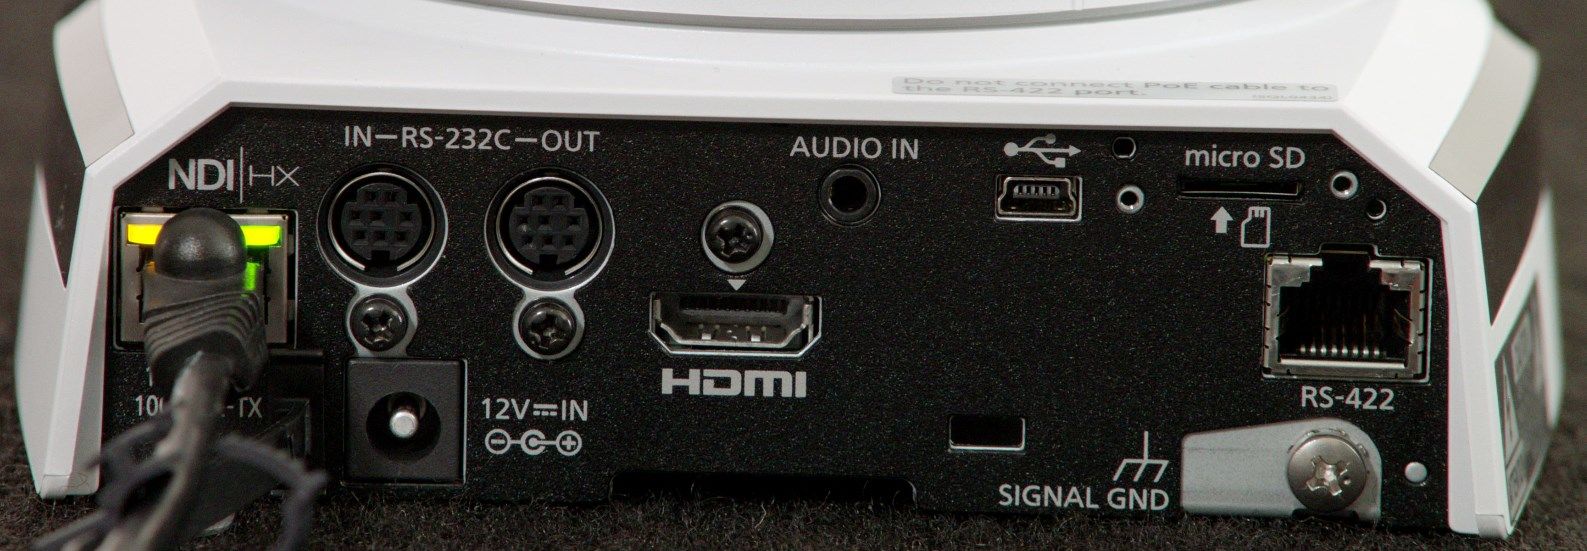 AW-HN38H PTZ Camera Rear Input Outputs NDI